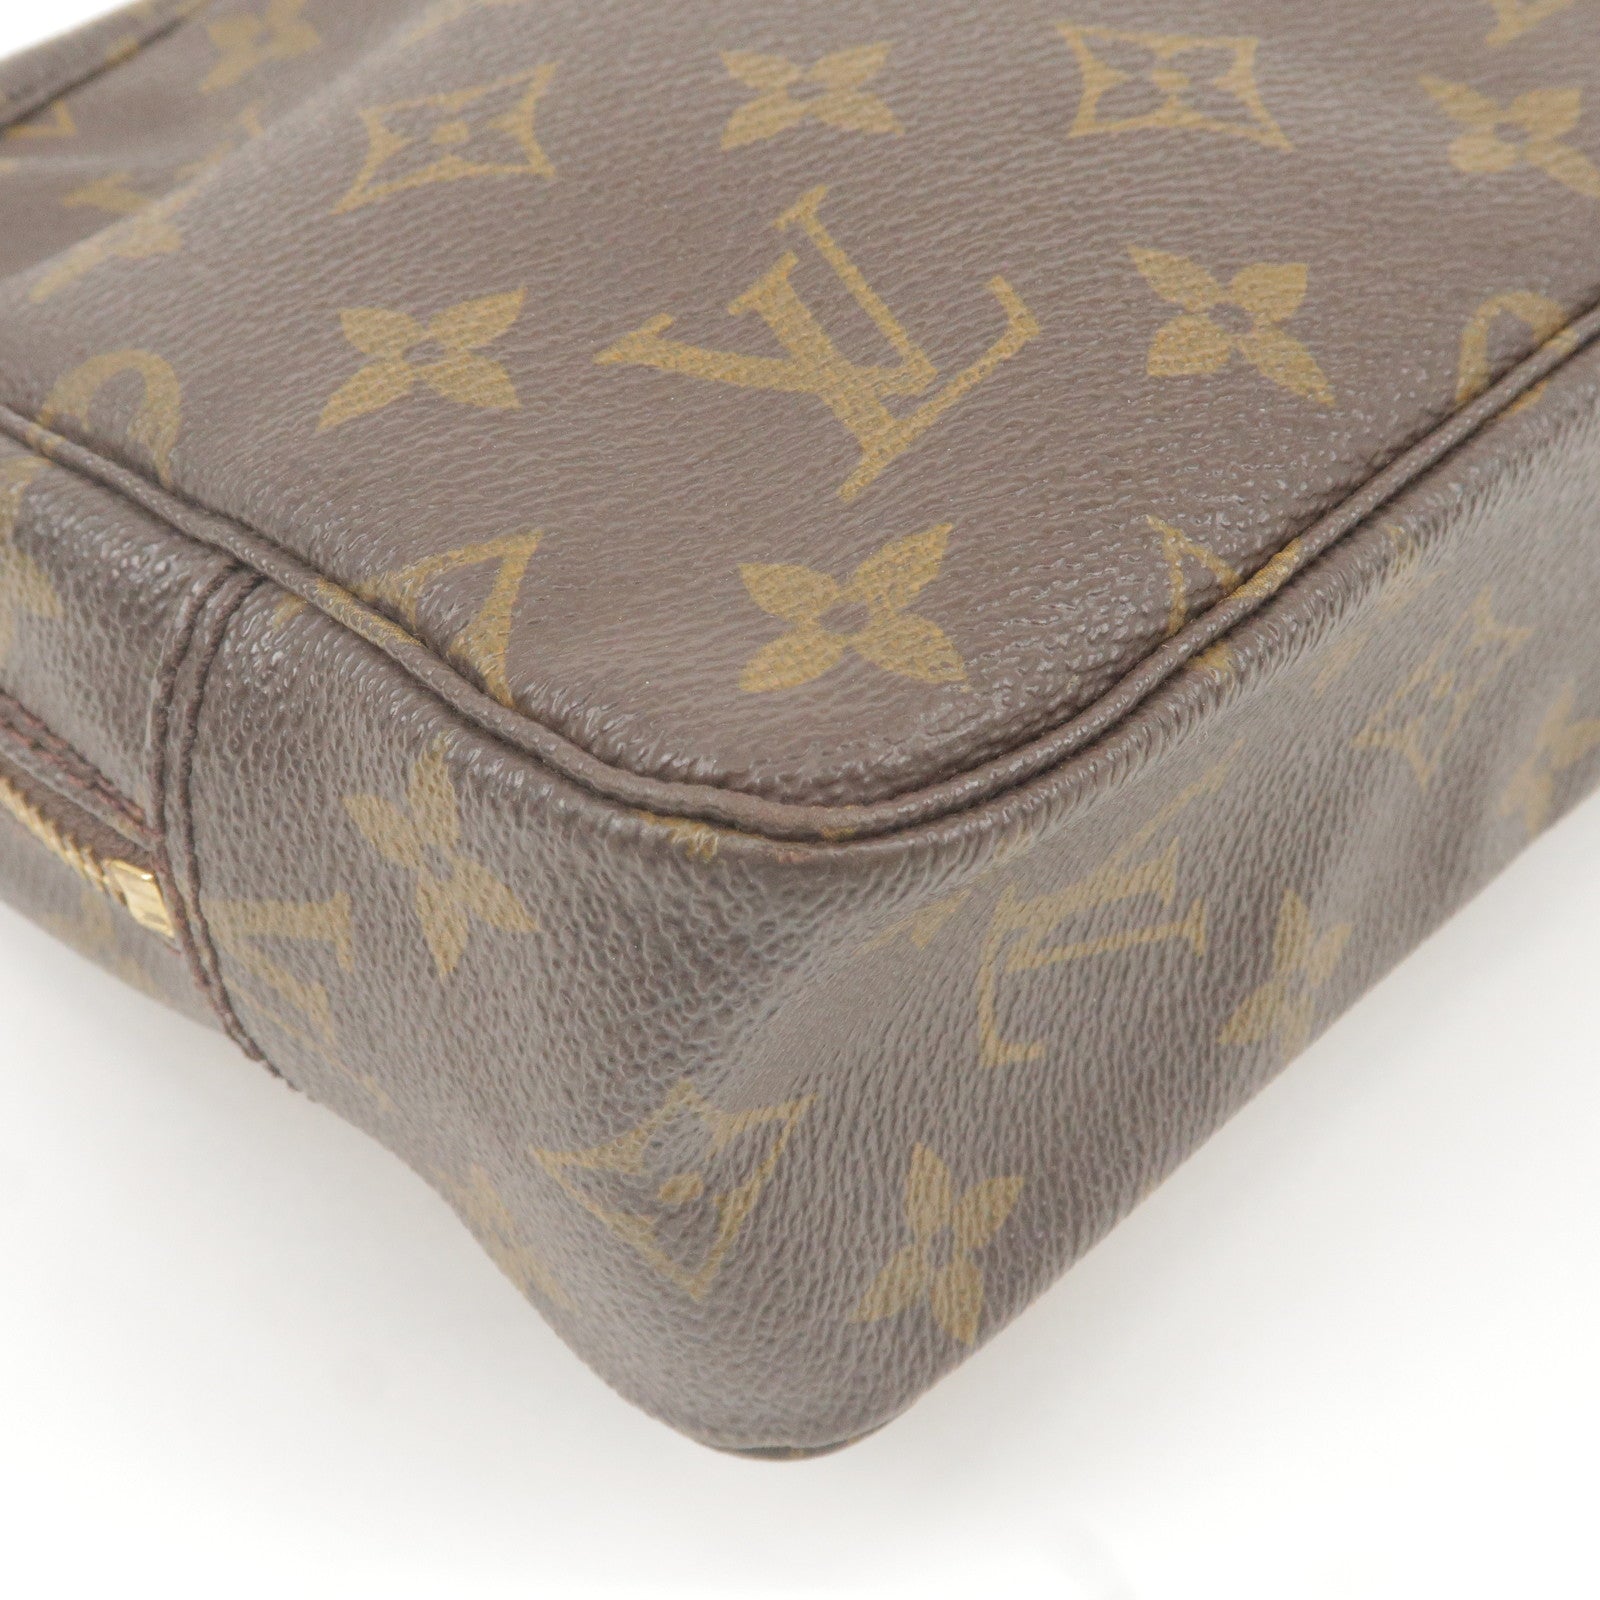 LOUIS VUITTON Travel Bags Trousse De Toilette Louis Vuitton Cloth